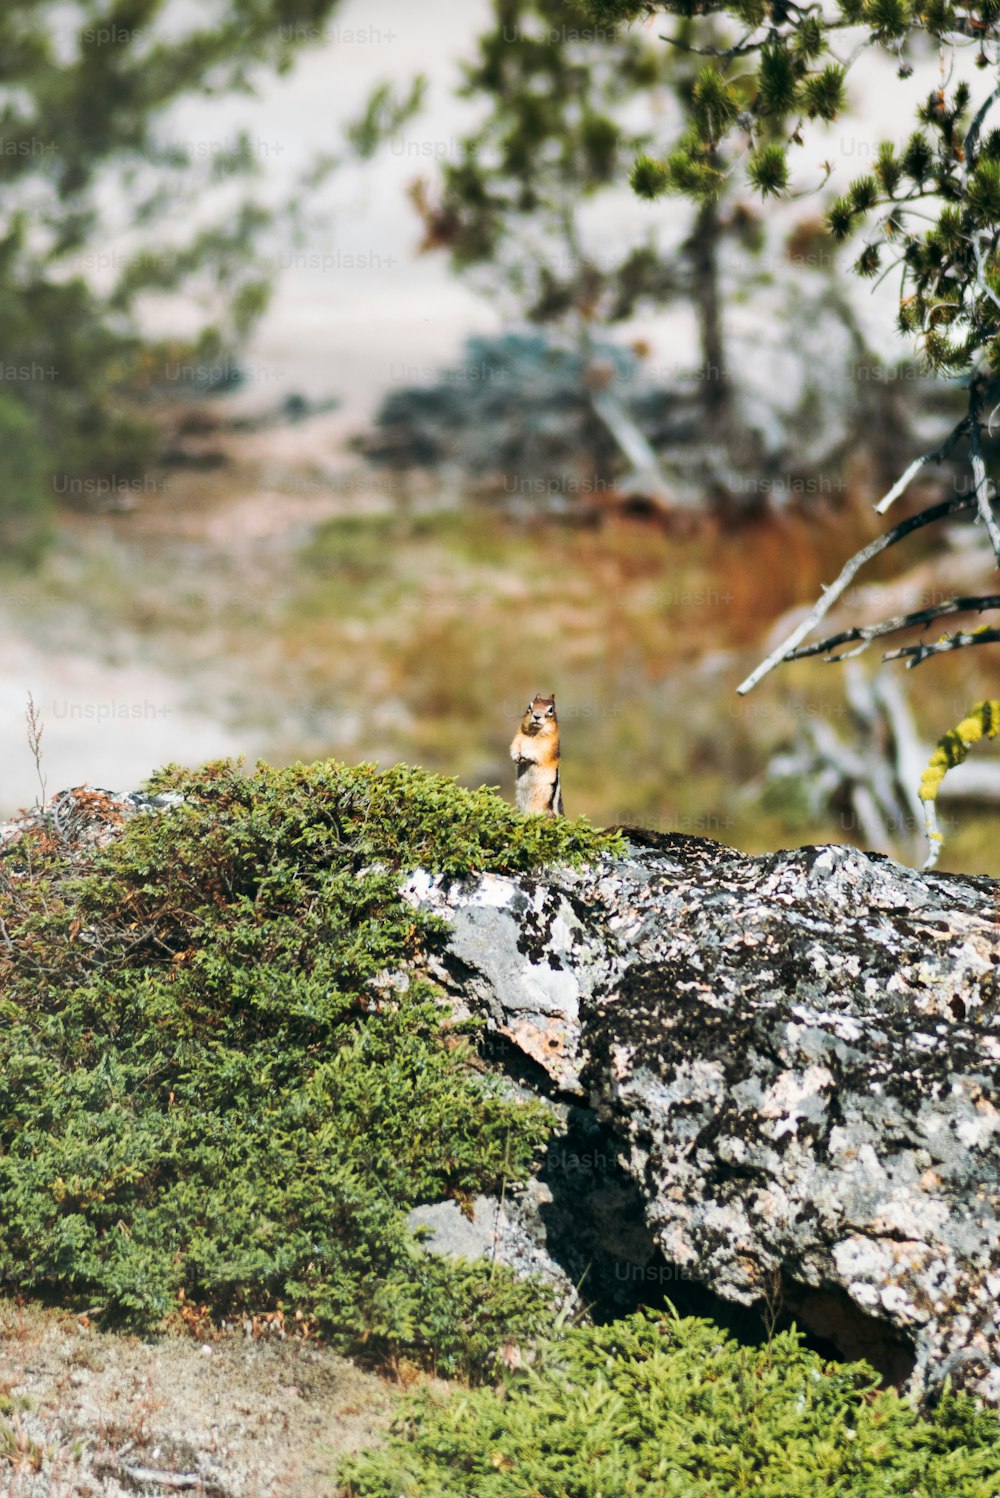 Un piccolo uccello seduto sulla cima di una roccia coperta di muschio